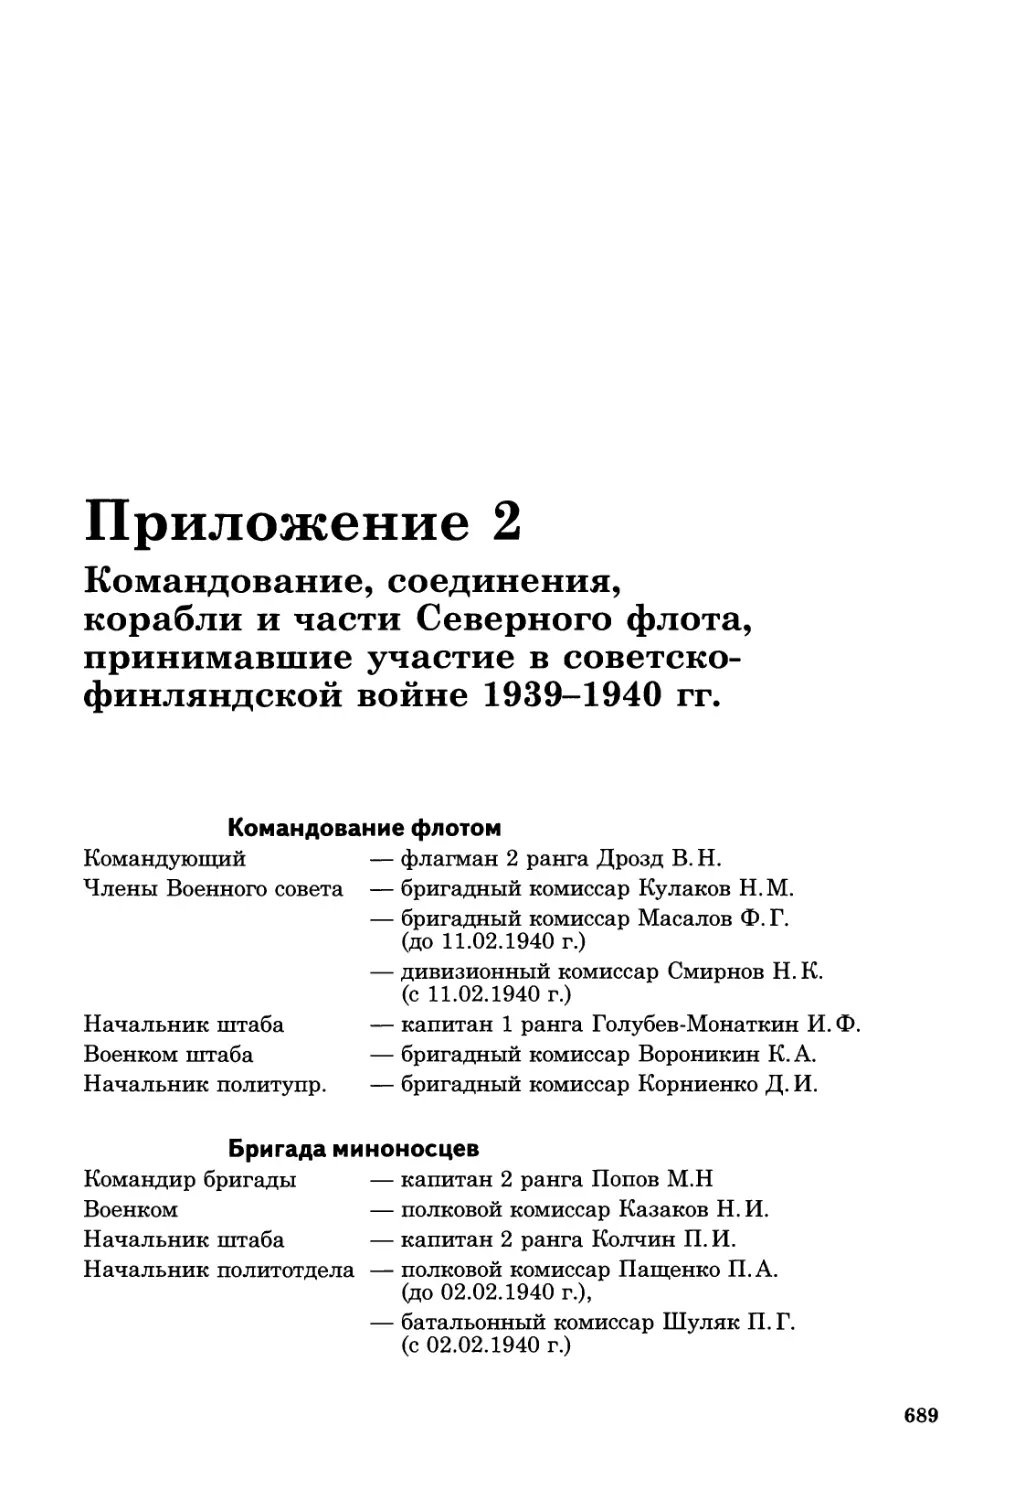 Приложение 2. Командование, соединения, корабли и части Северного флота, принимавшие участие в советско-финляндской войне 1939—1940 гг